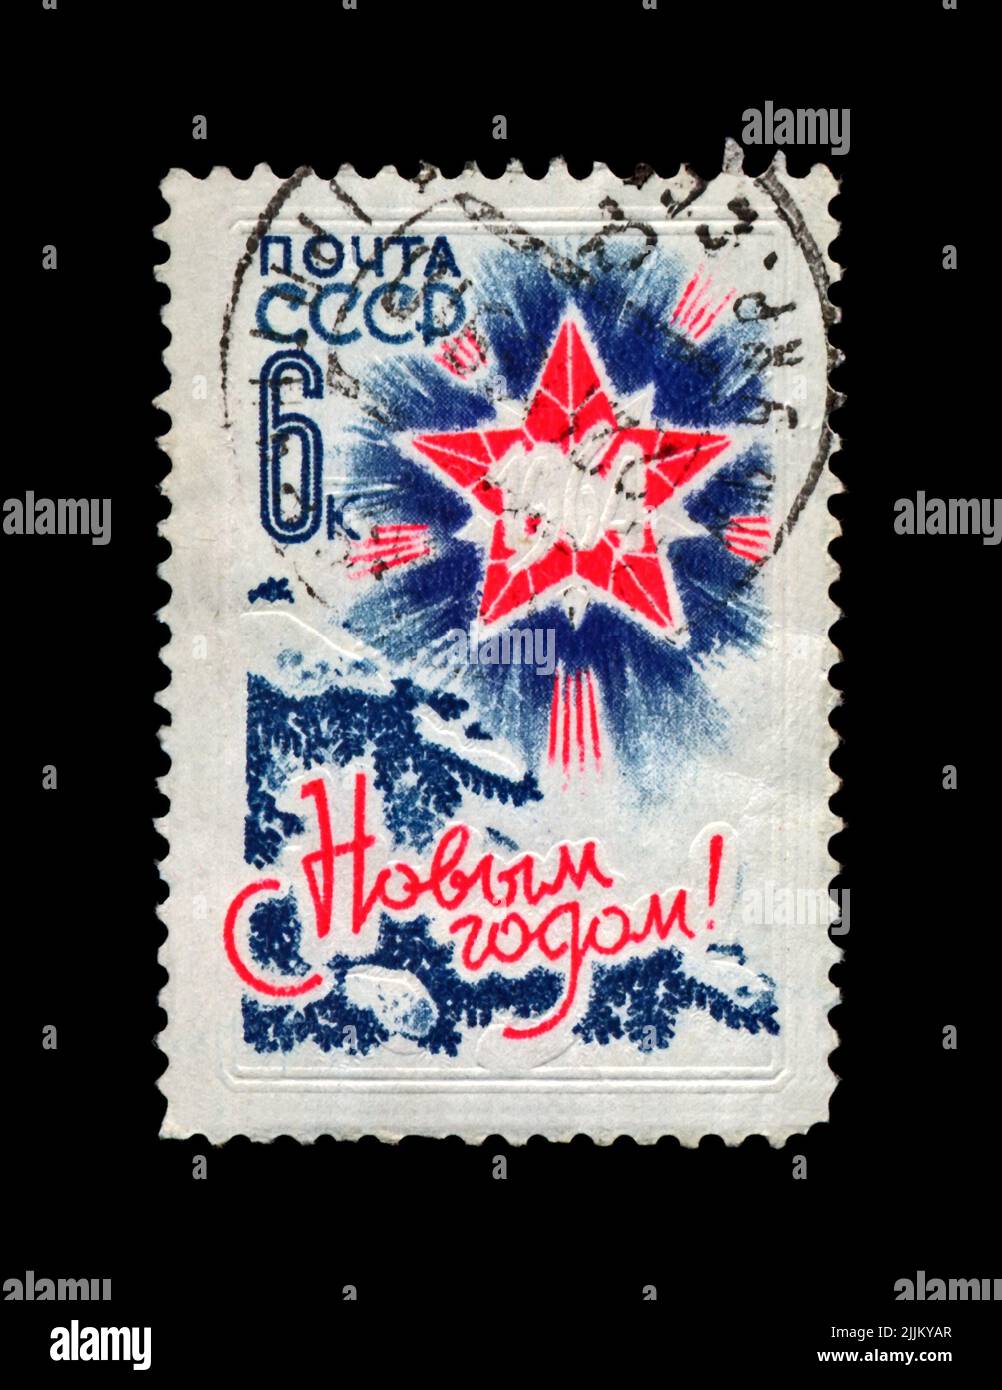 Abete verde e stella rossa con raggi simmetrici per Capodanno, circa 1963. Felice anno nuovo 1964 come testo. Cancellato timbro stampato in URSS. Foto Stock